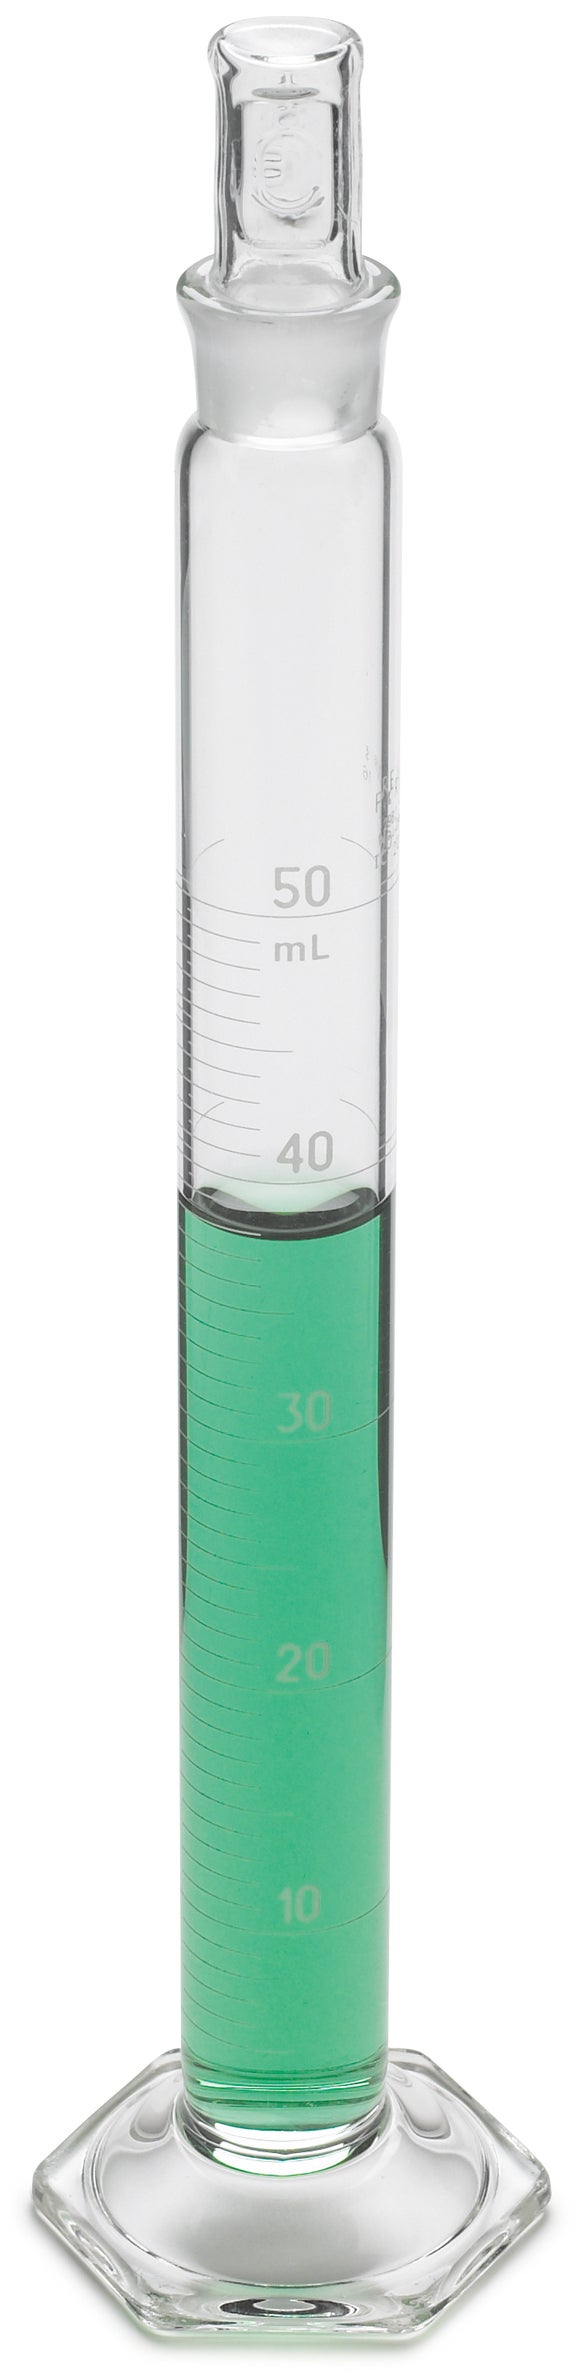 Cylindre, gradué, mélange, verre, 10 mL ±0,1 mL, divisions de 0,2 mL, bouchon en verre taille 13